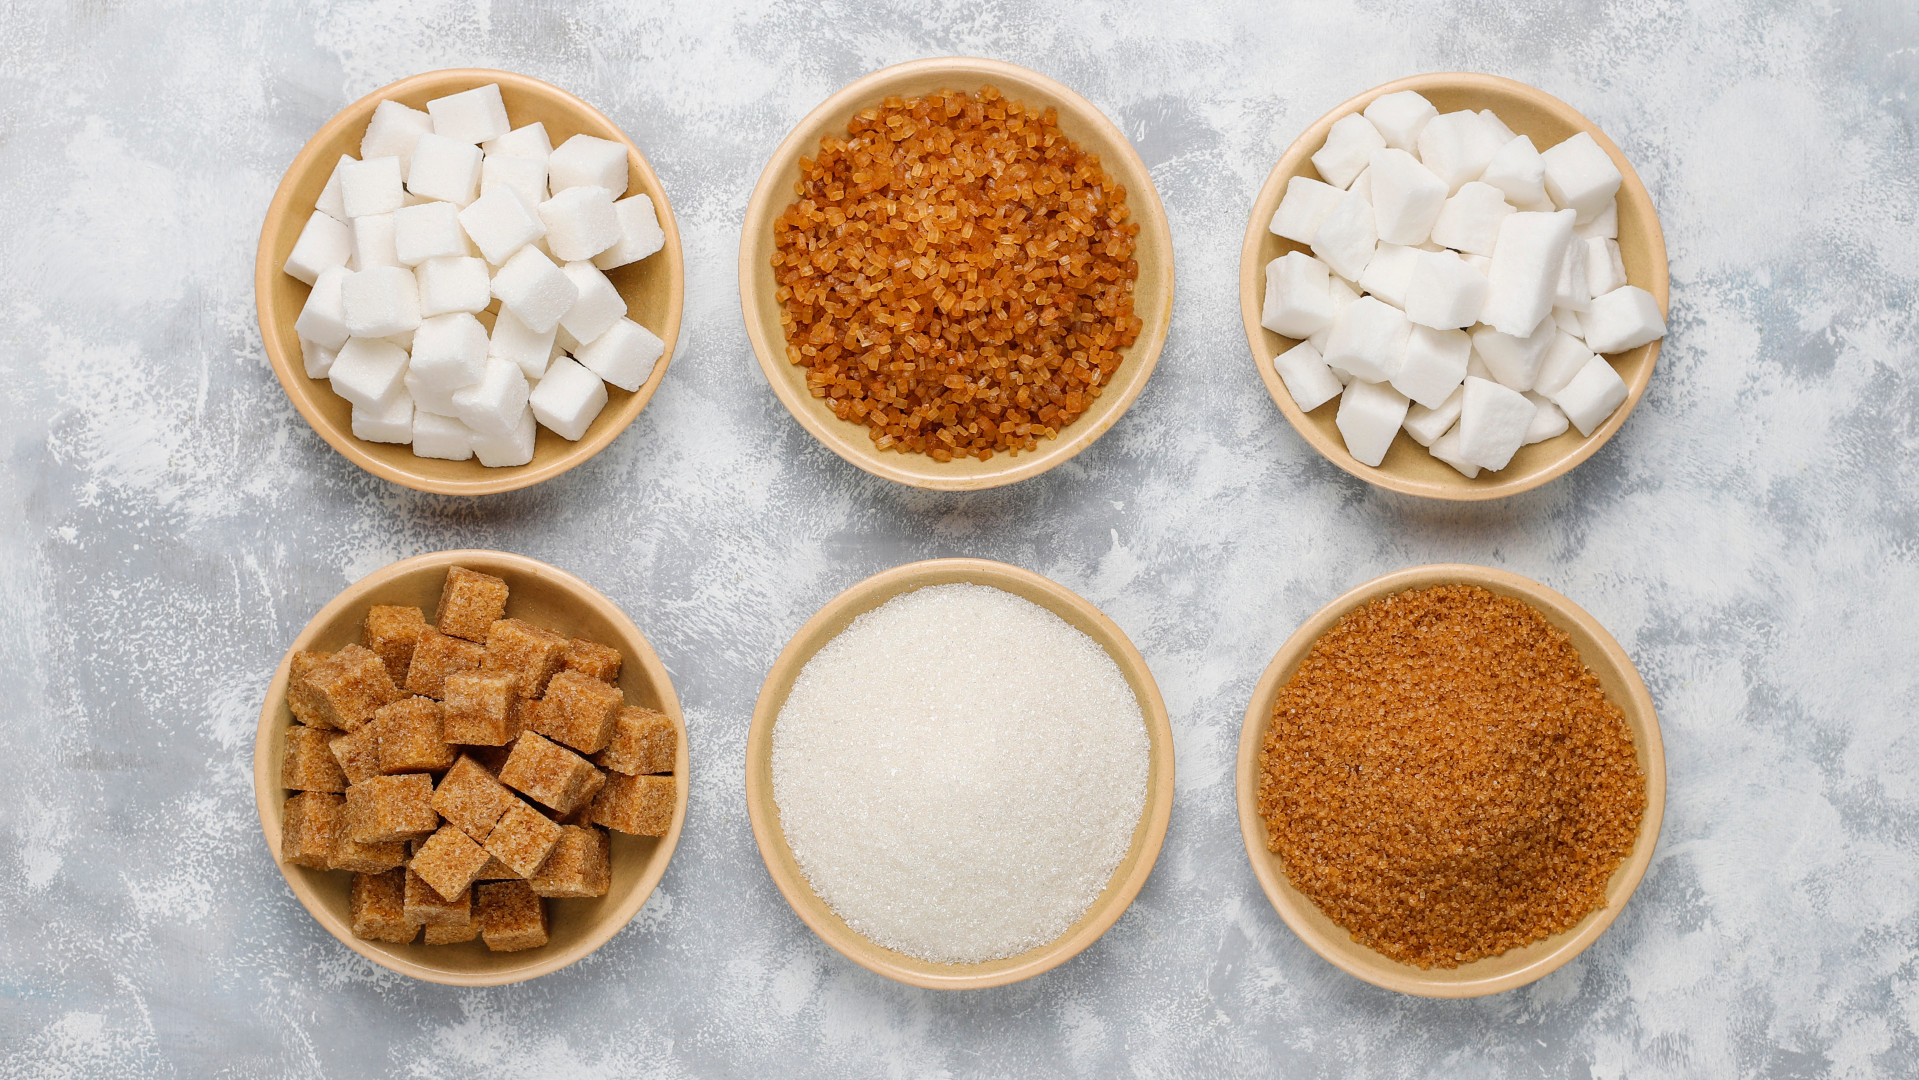 Foto de capa do artigo "Açúcar: quais os tipos e benefícios? Pode fazer mal?"